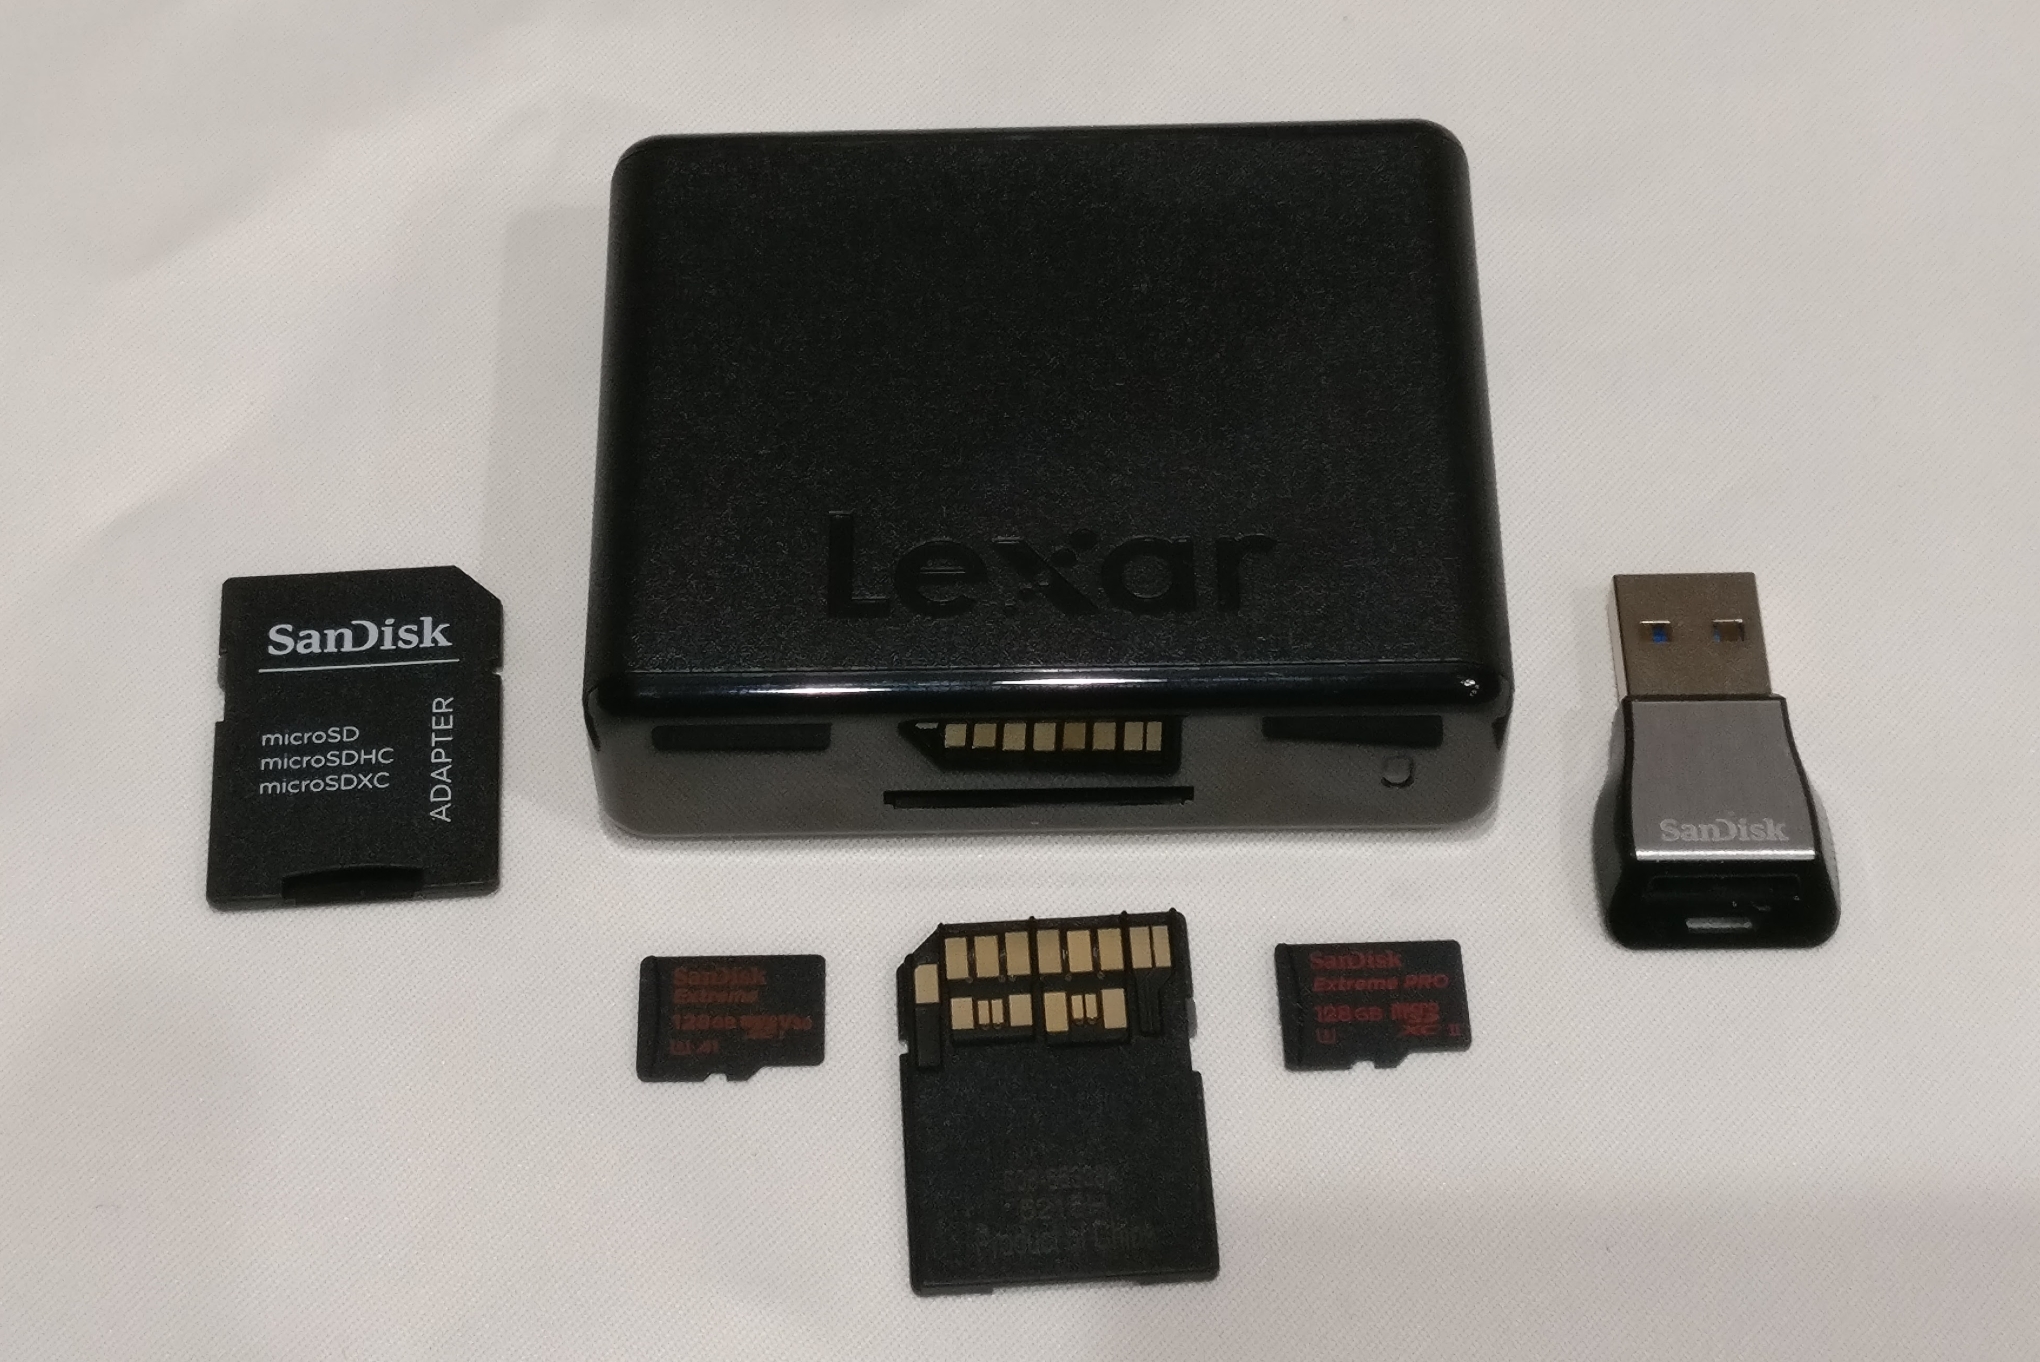 SanDisk 512GB Extreme Pro UHS-I microSDXC Memory Card